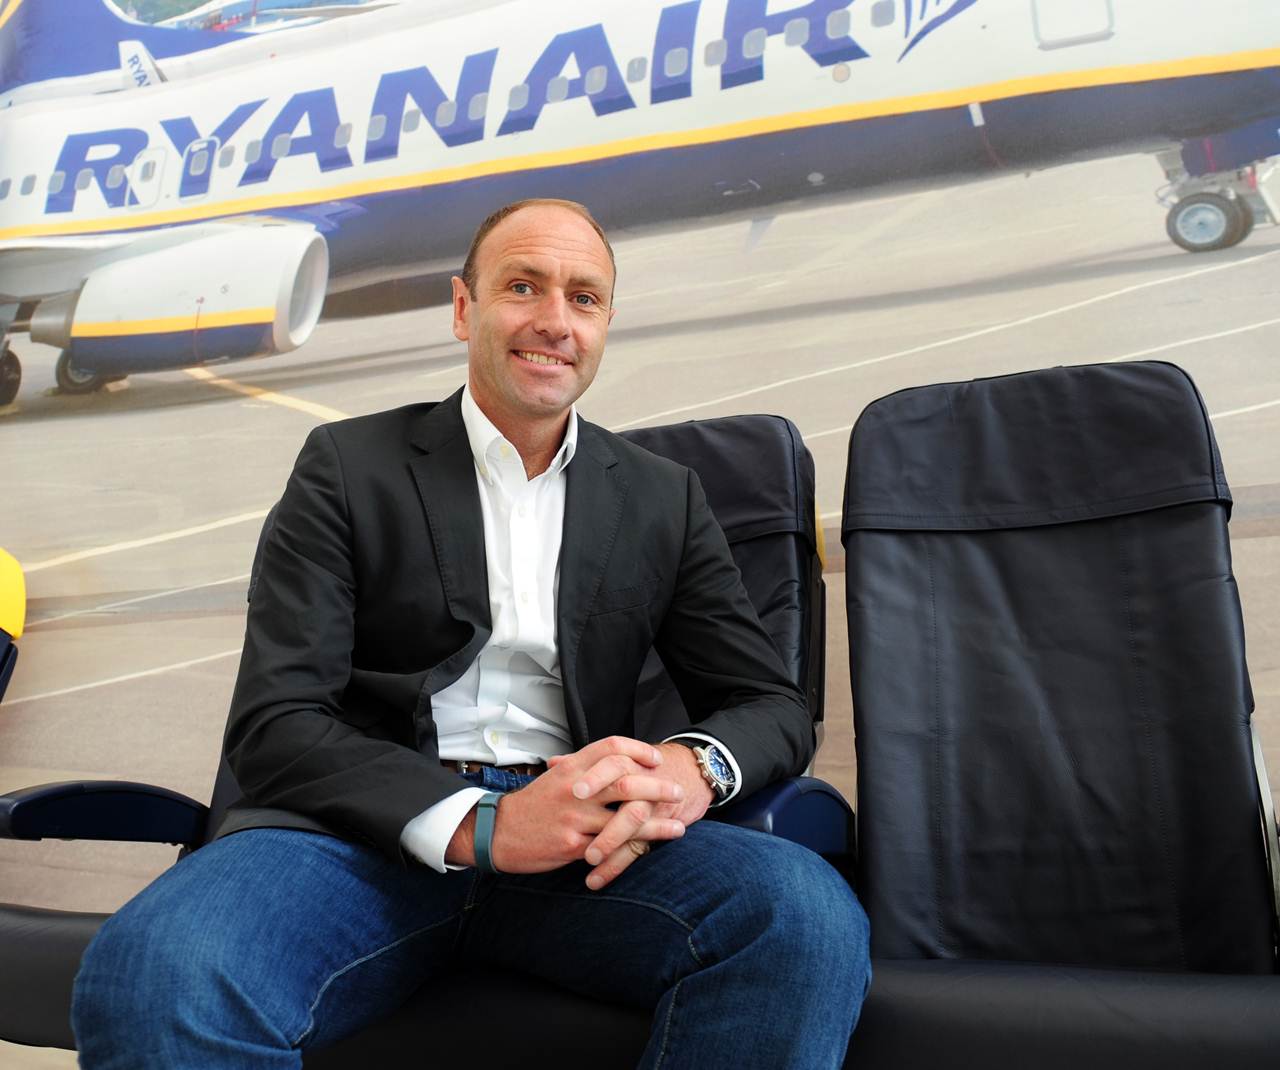 Kenny Jacobs da Ryanair apresenta check-in com antecedência de 60 dias